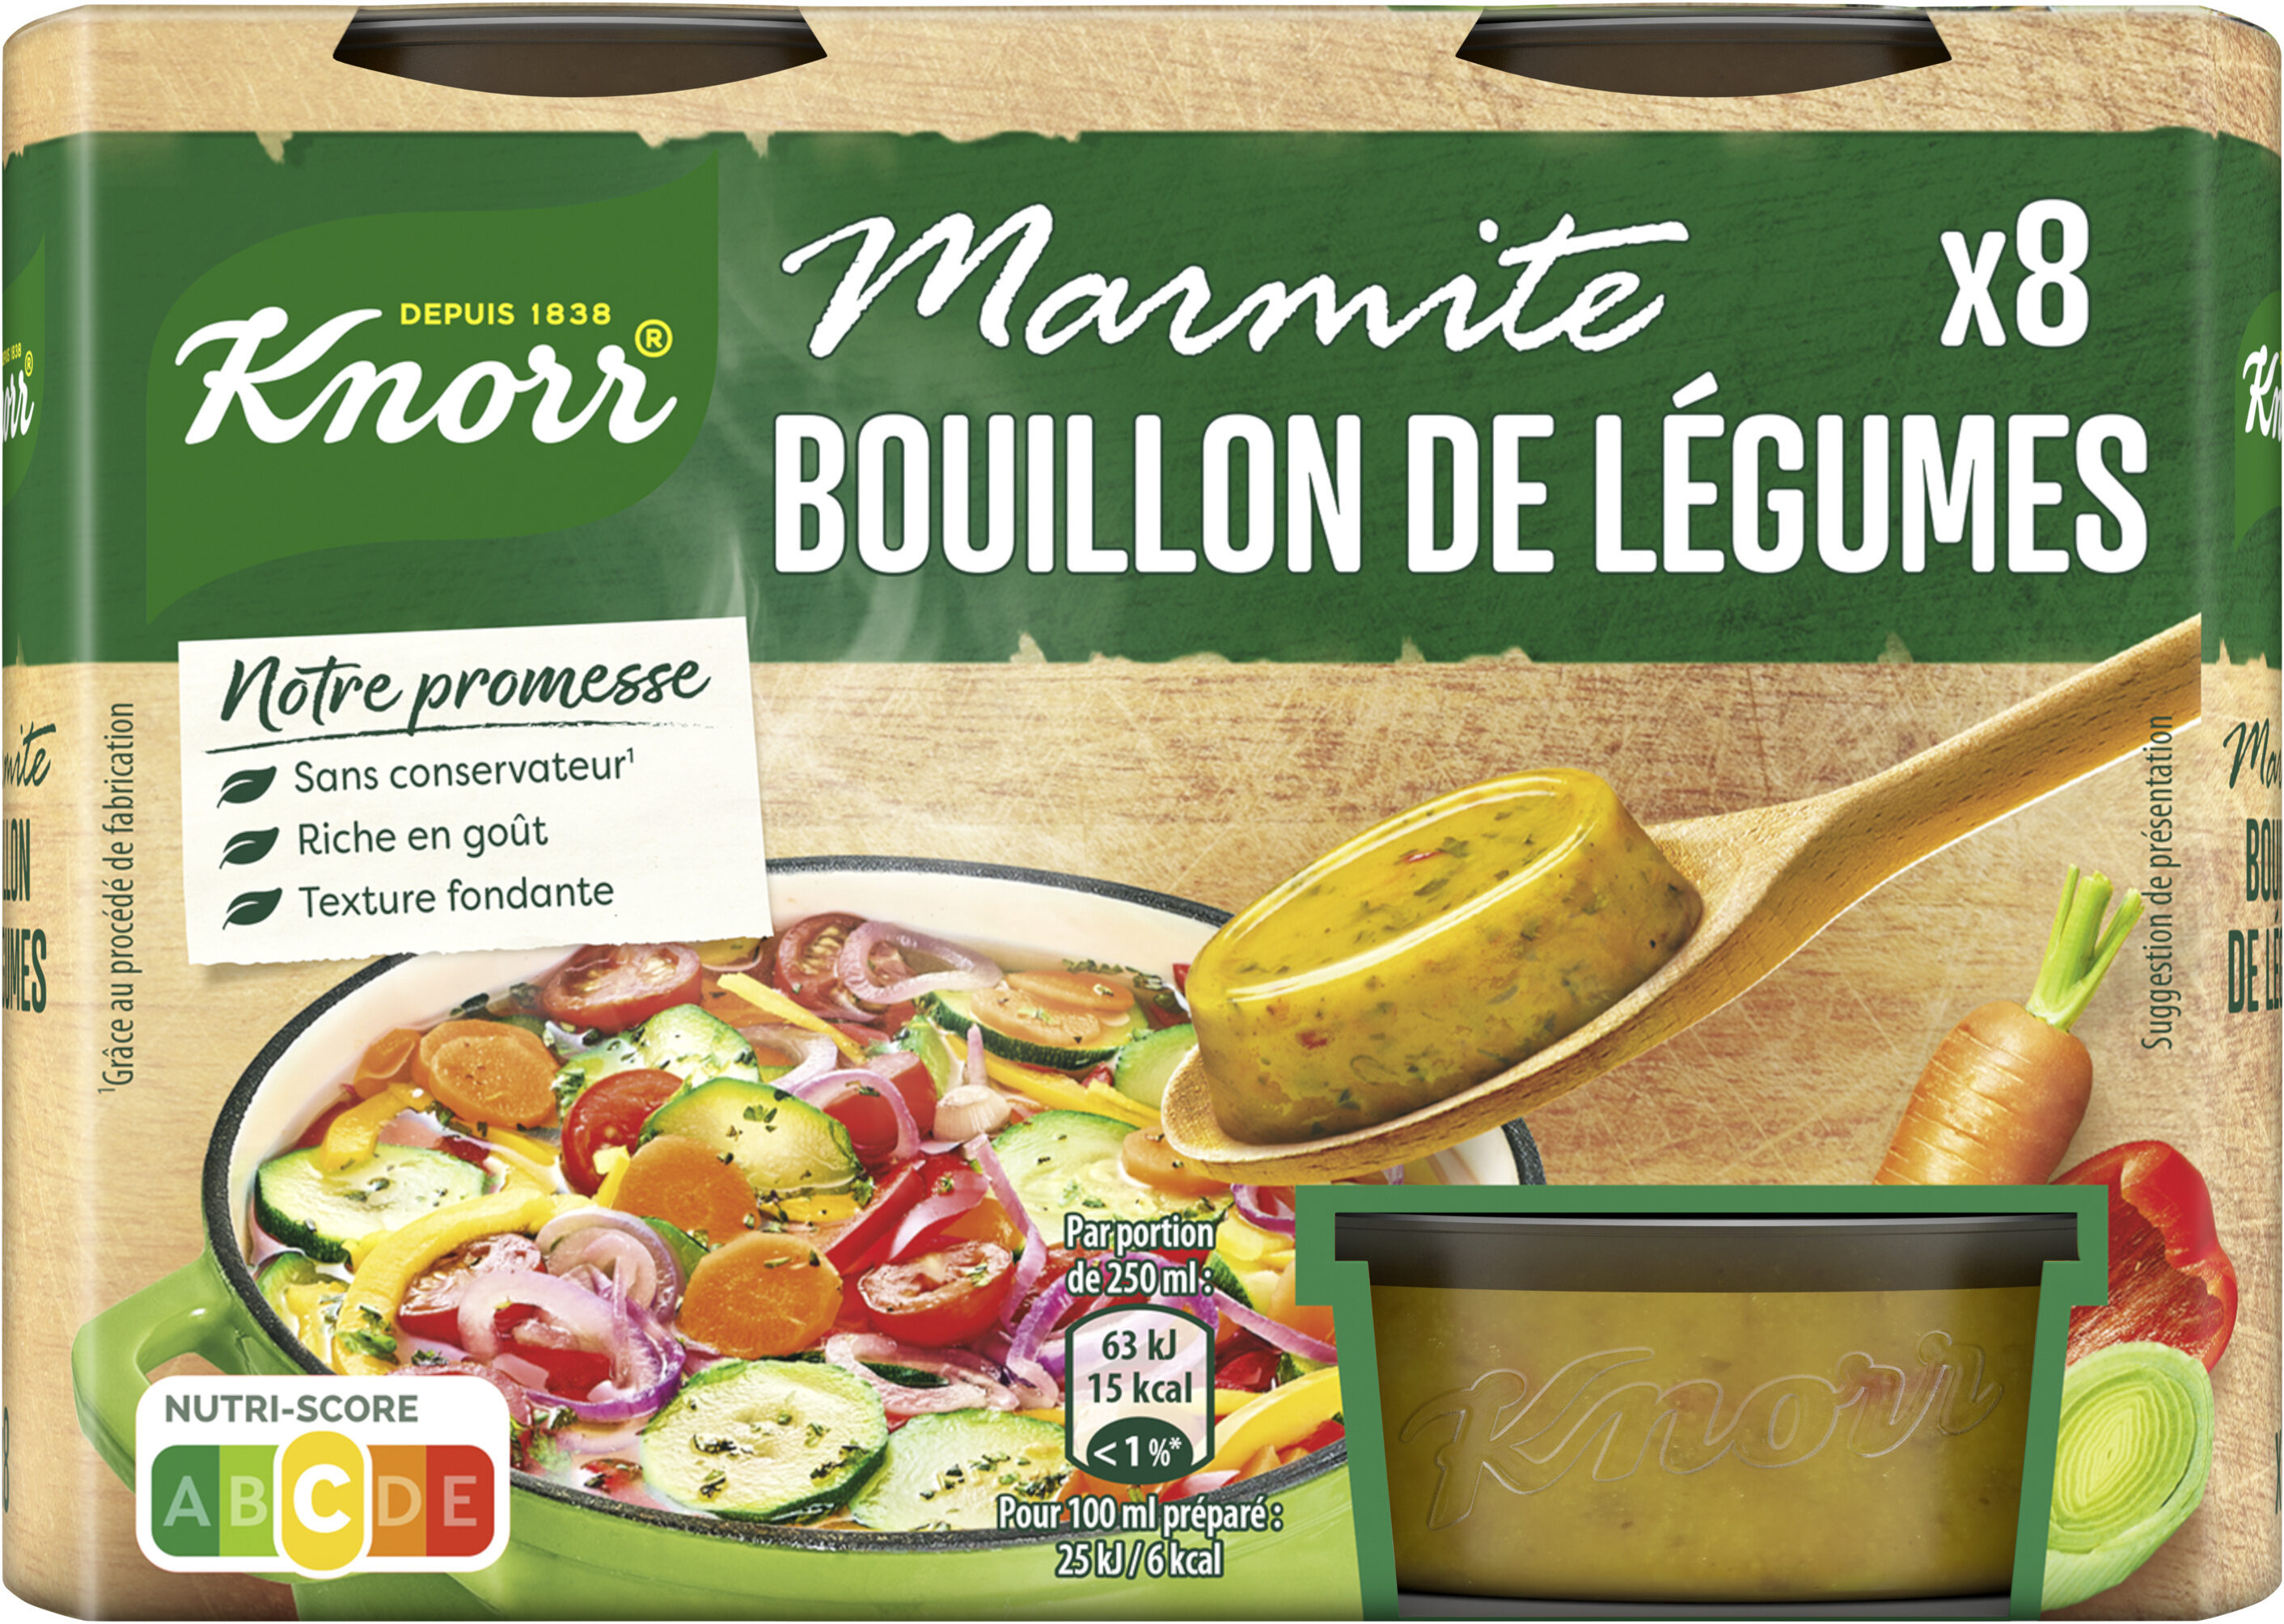 Knorr Marmite Bouillon de Légumes 8 Capsules 224g - Produit - fr